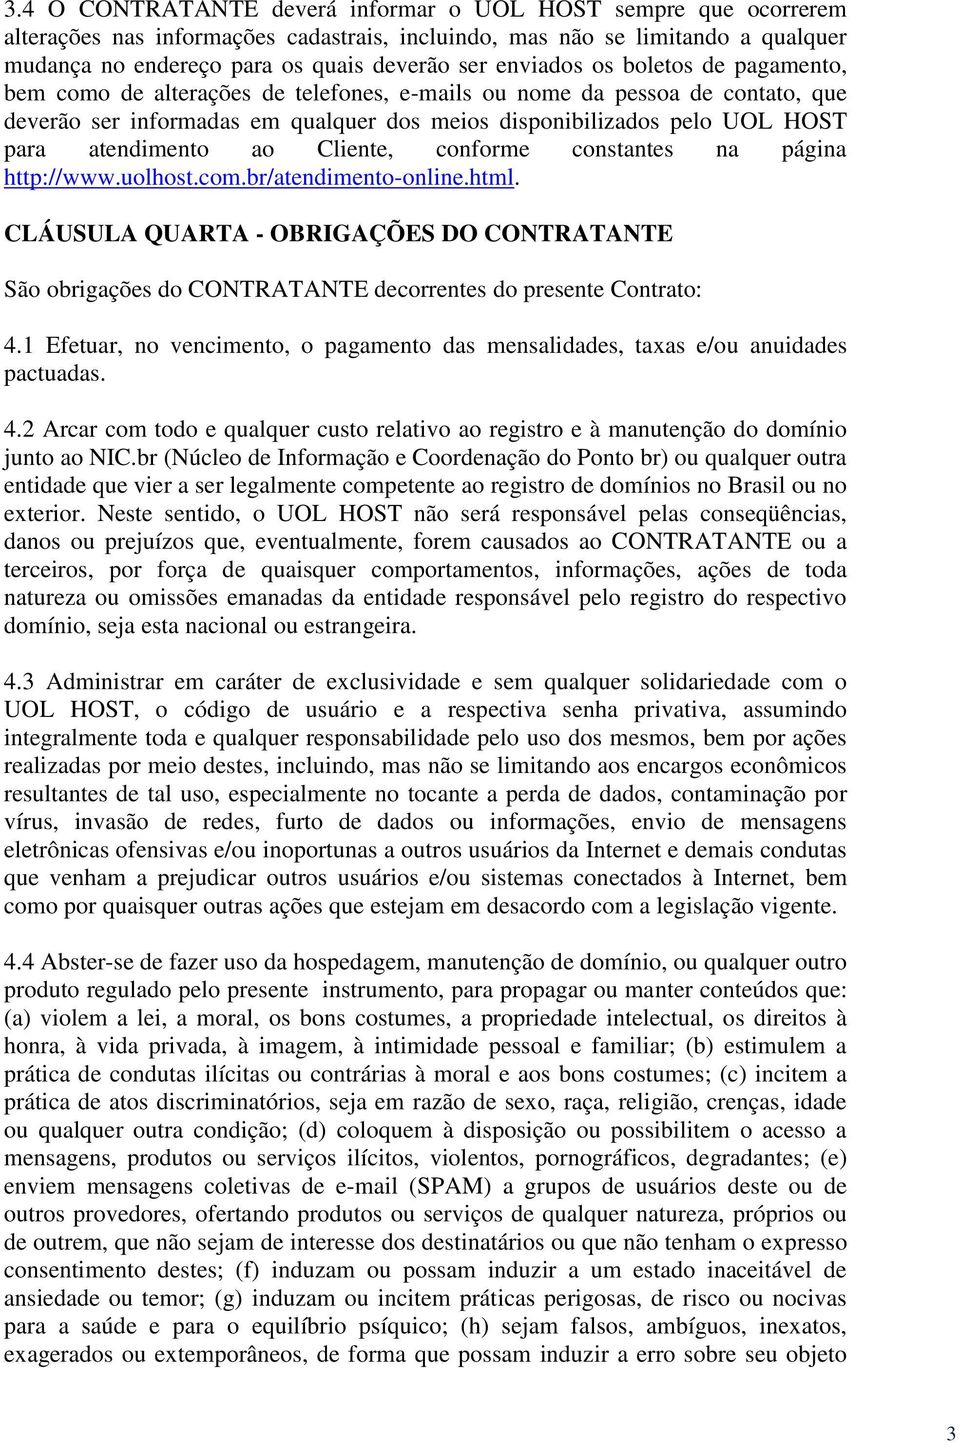 atendimento ao Cliente, conforme constantes na página http://www.uolhost.com.br/atendimento-online.html.